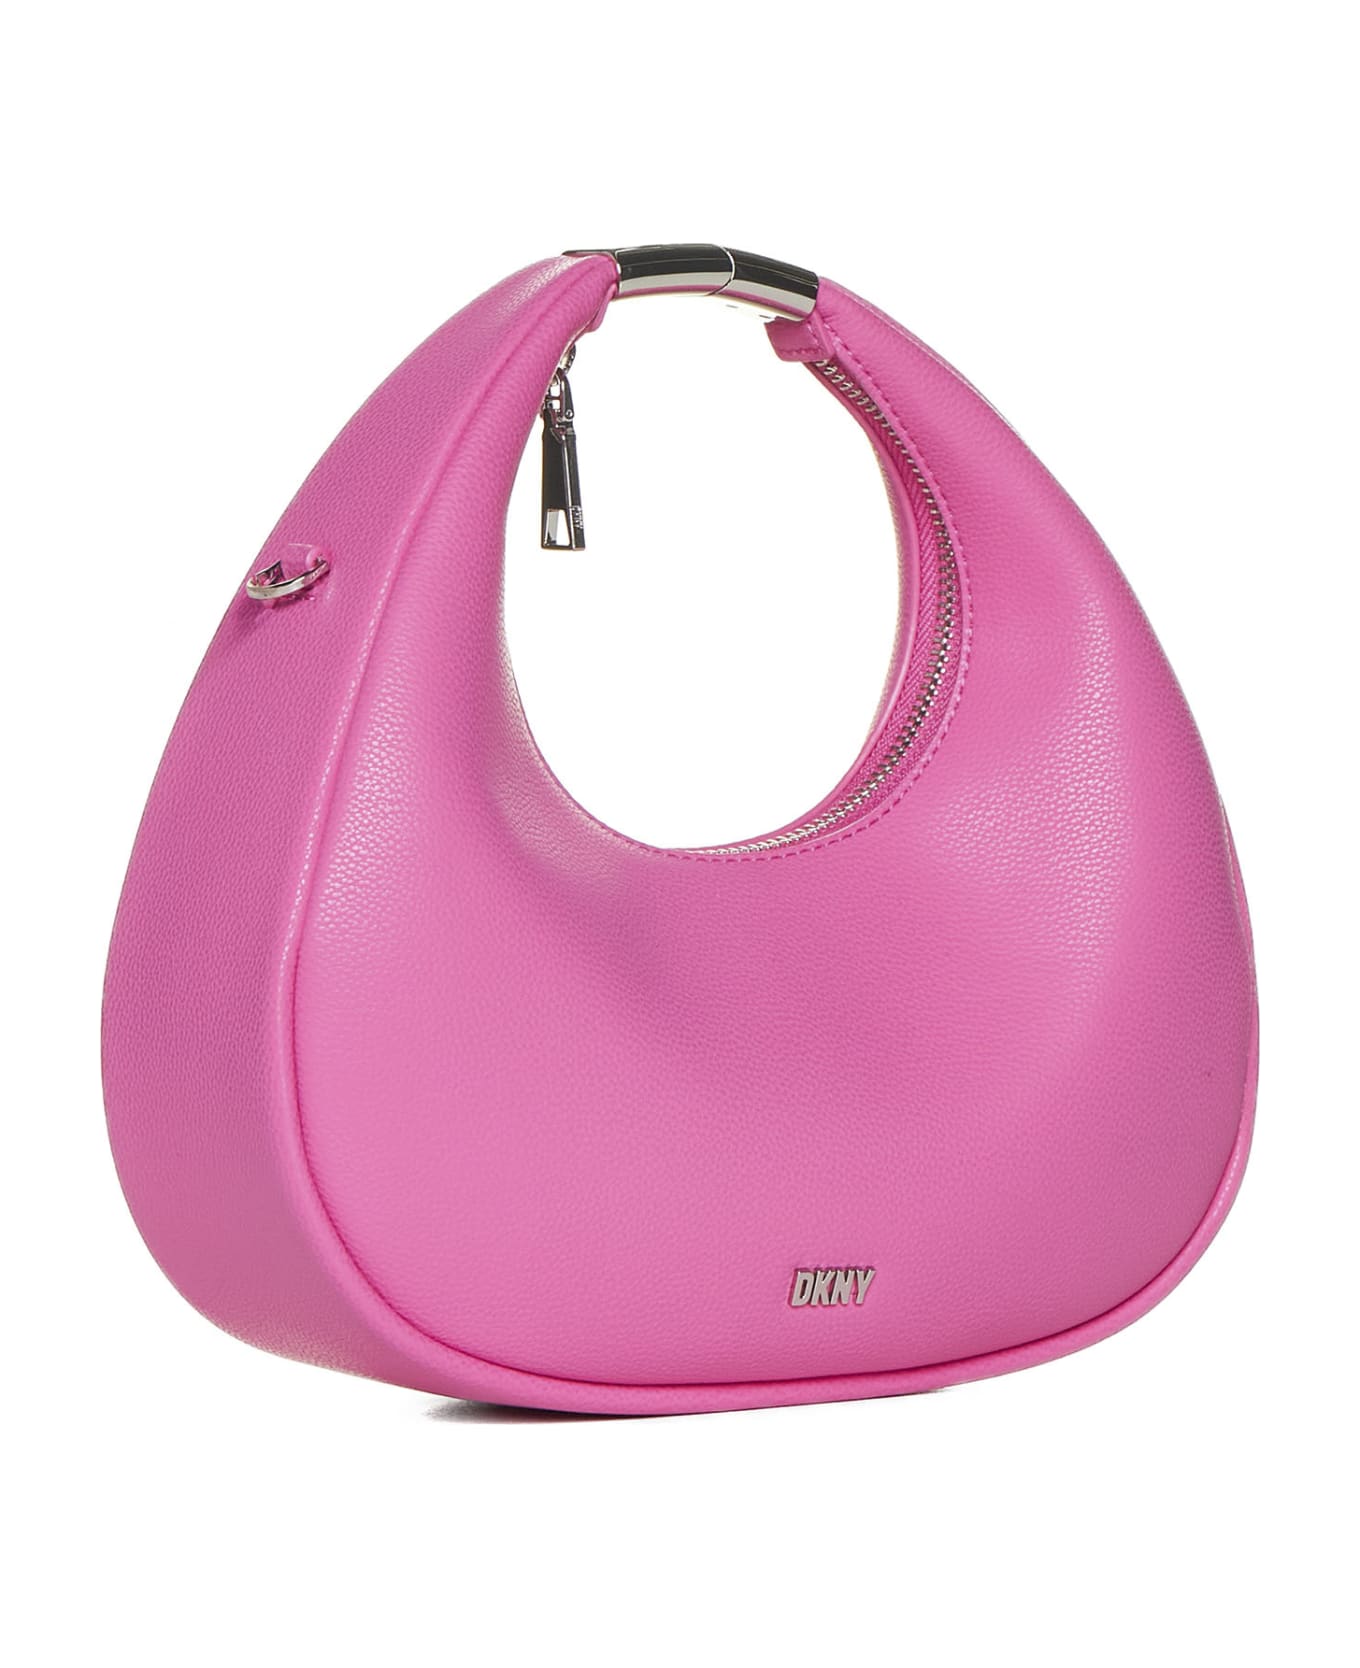 DKNY Shoulder Bag - Hot pink